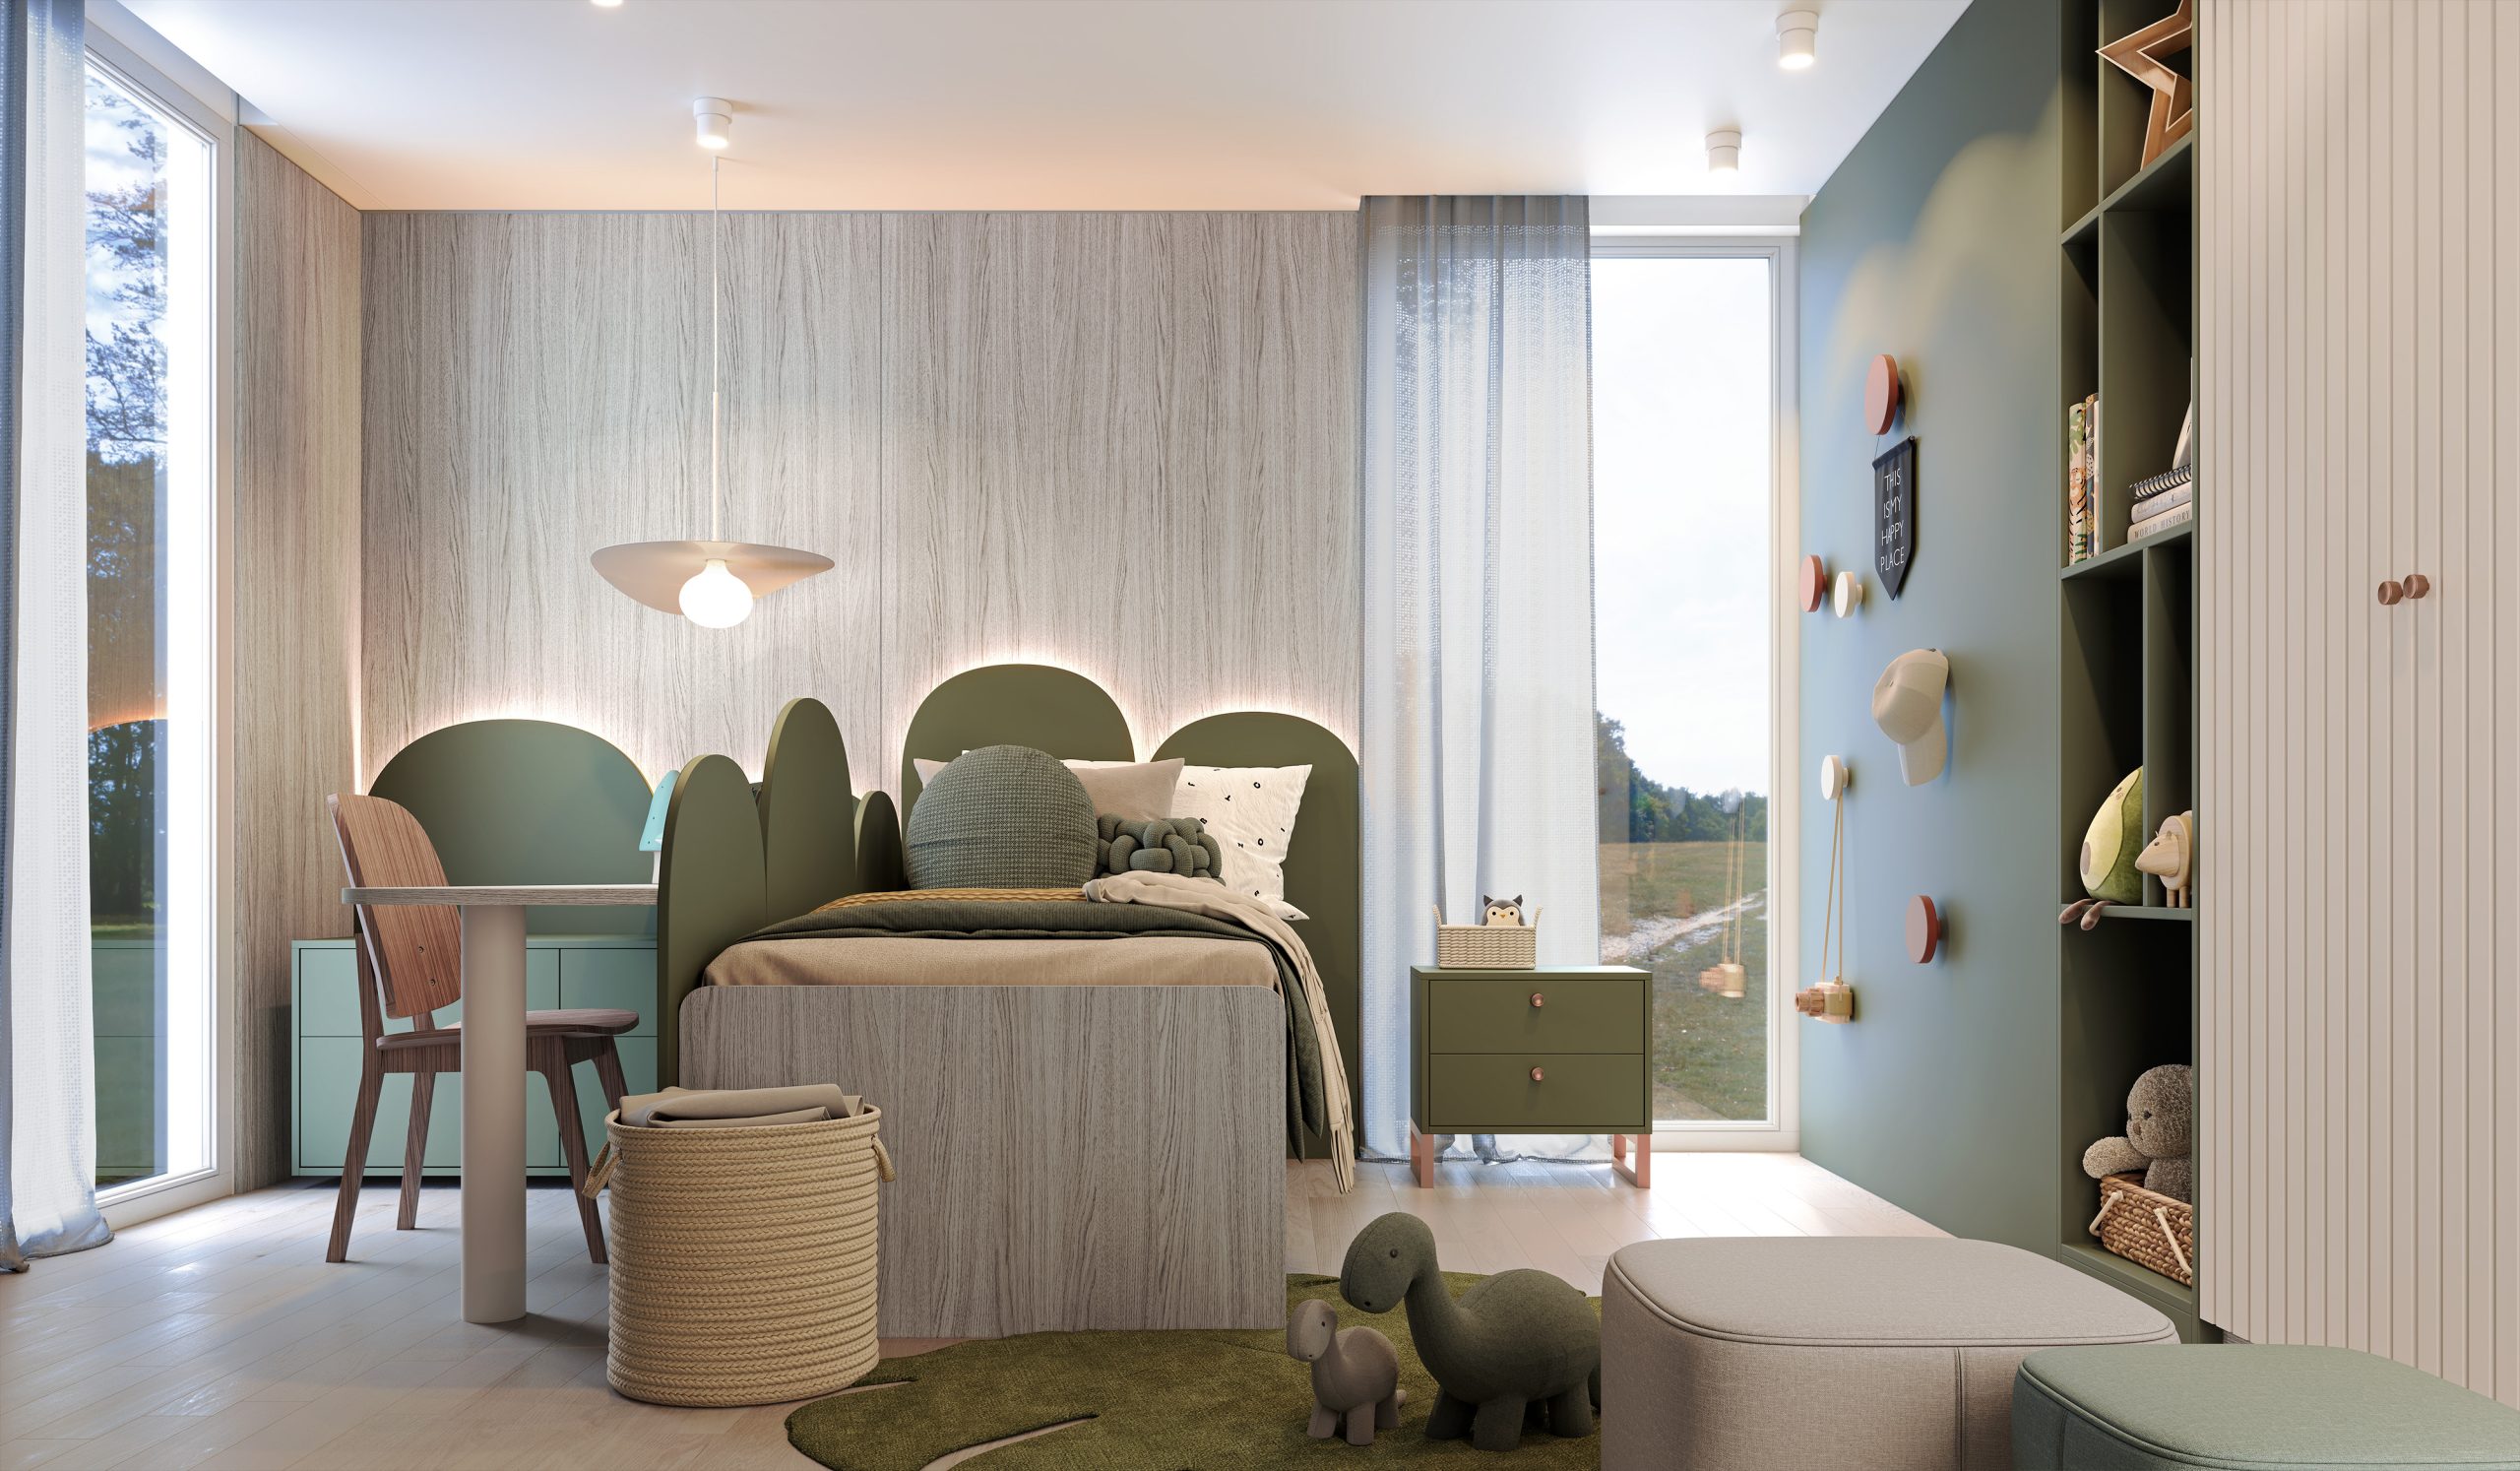 Lançamentos Finger Móveis Planejados - 2024 - Dormitório Infantil Estilo Japandi Minimalista com cores claras - verde com madeira clara